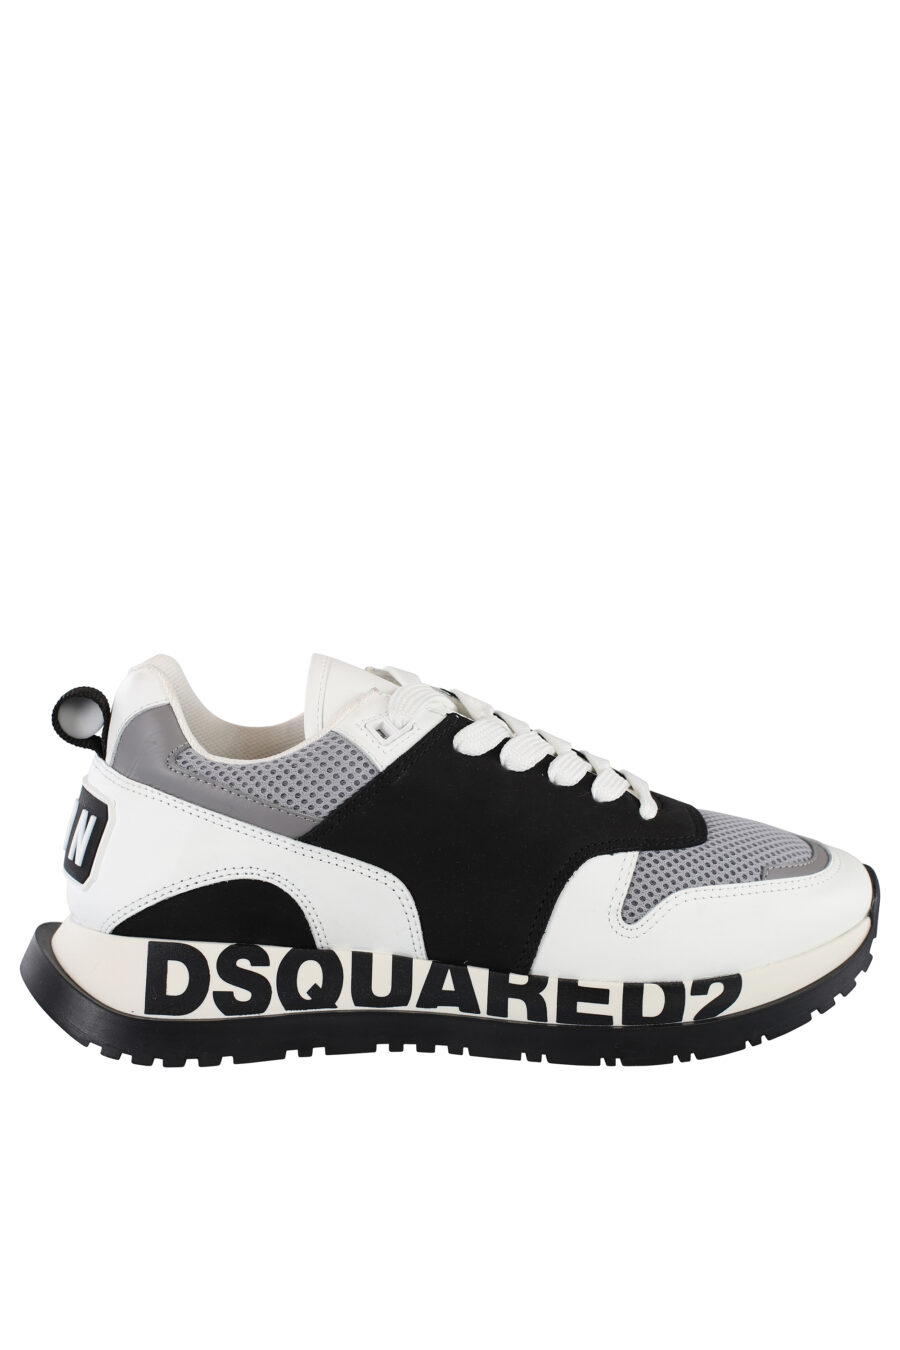 Zapatillas blancas con negro y detalle gris con logo en suela - IMG 6888